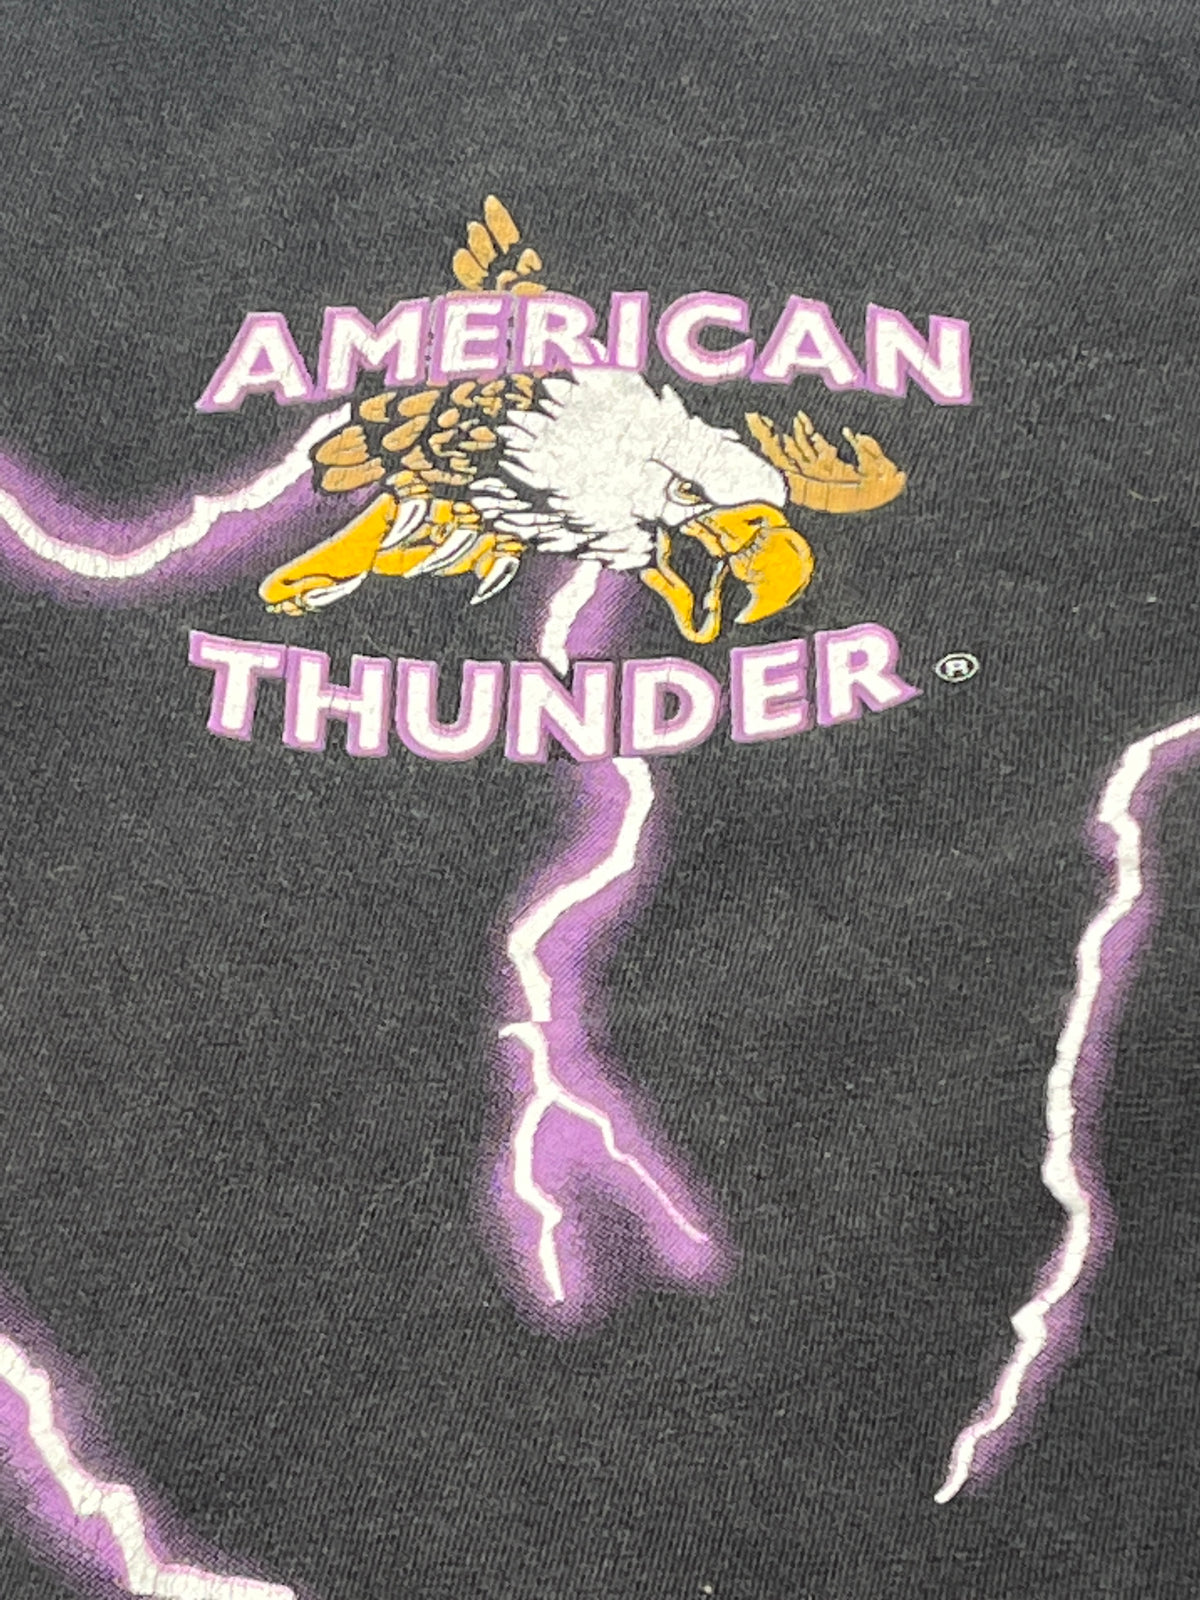 Vintage American Thunder Purple Horse Tee